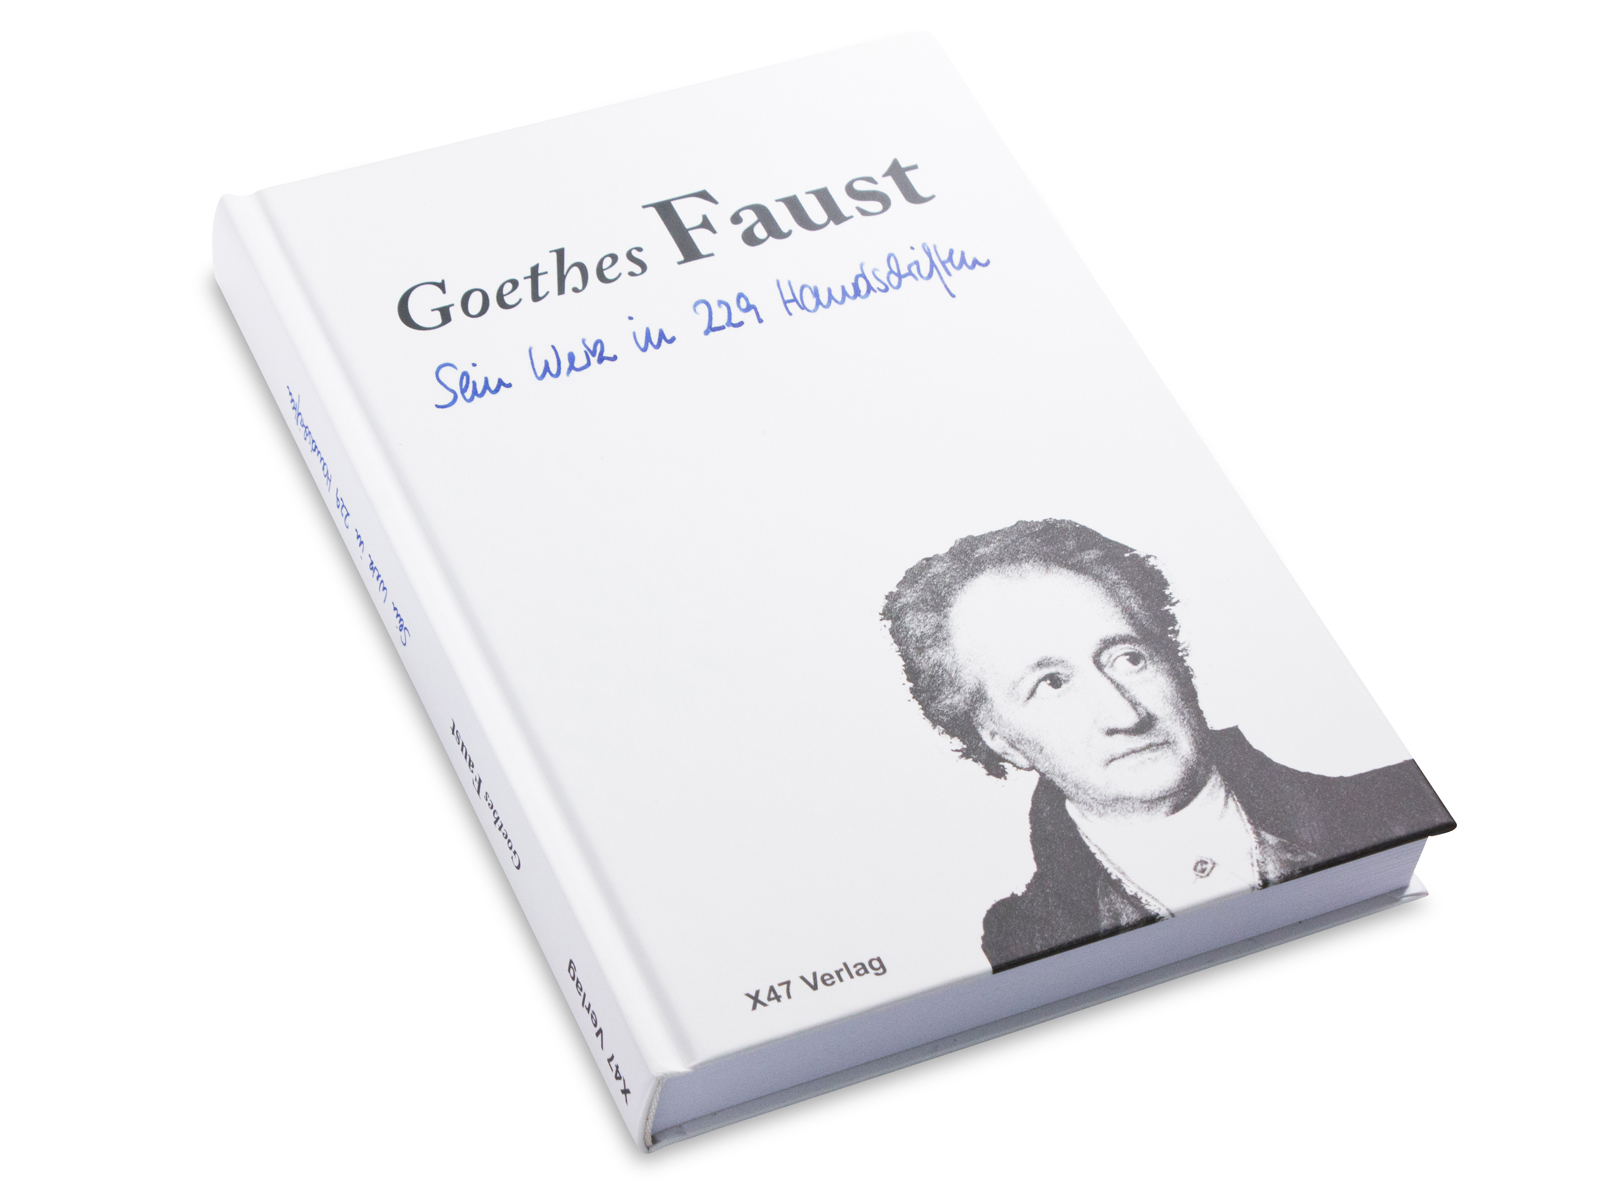 Goethes Faust - Sein Werk in 229 Handschriften, Hardcover